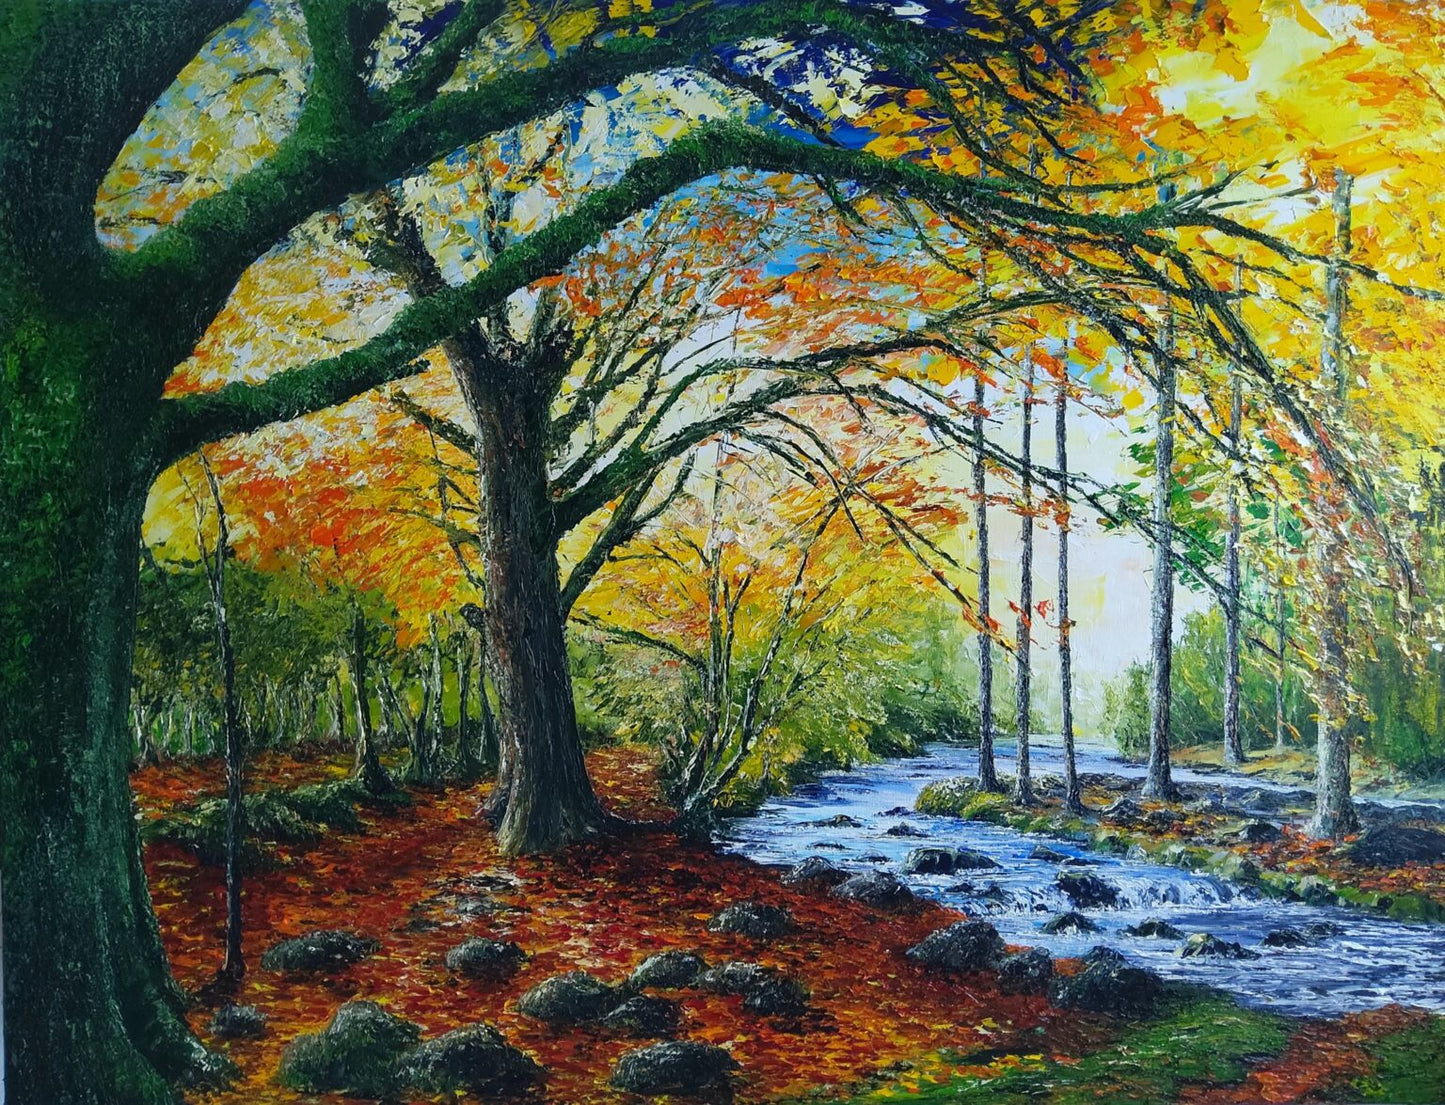 Under the Mossy Tree, Powerscourt in Autumn